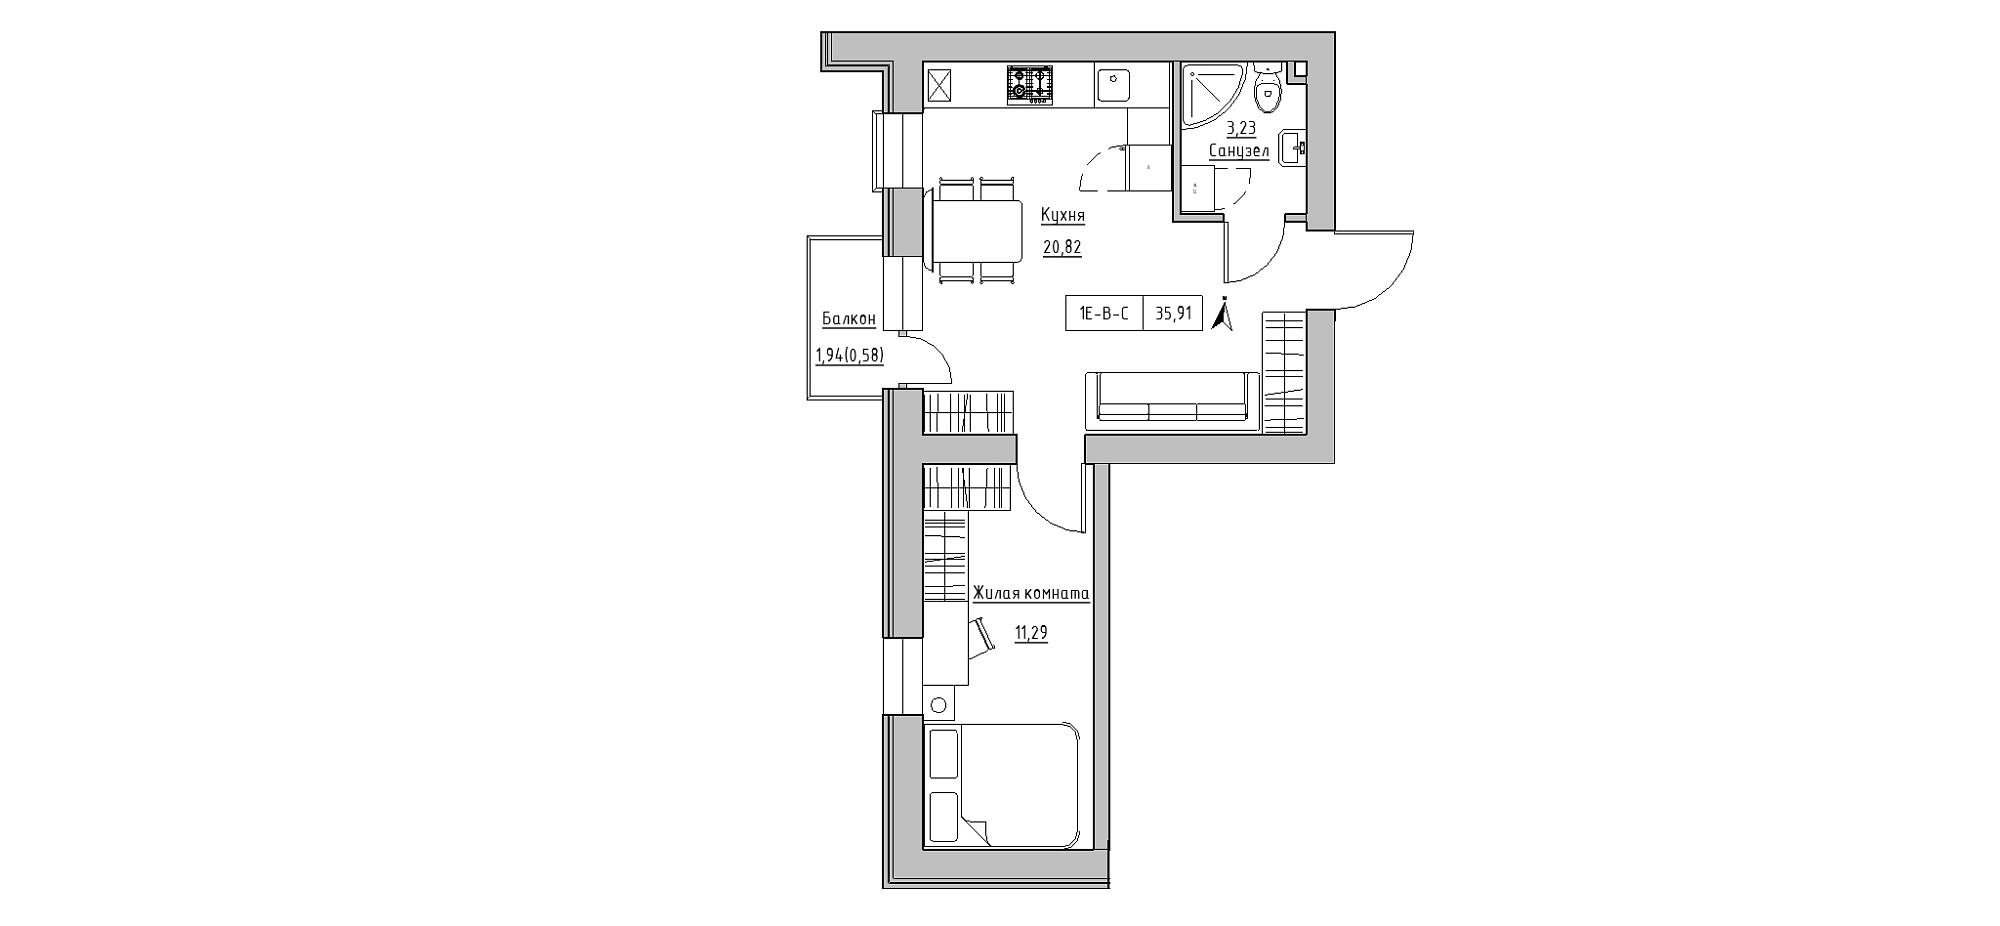 Планування 1-к квартира площею 35.91м2, KS-020-02/0009.